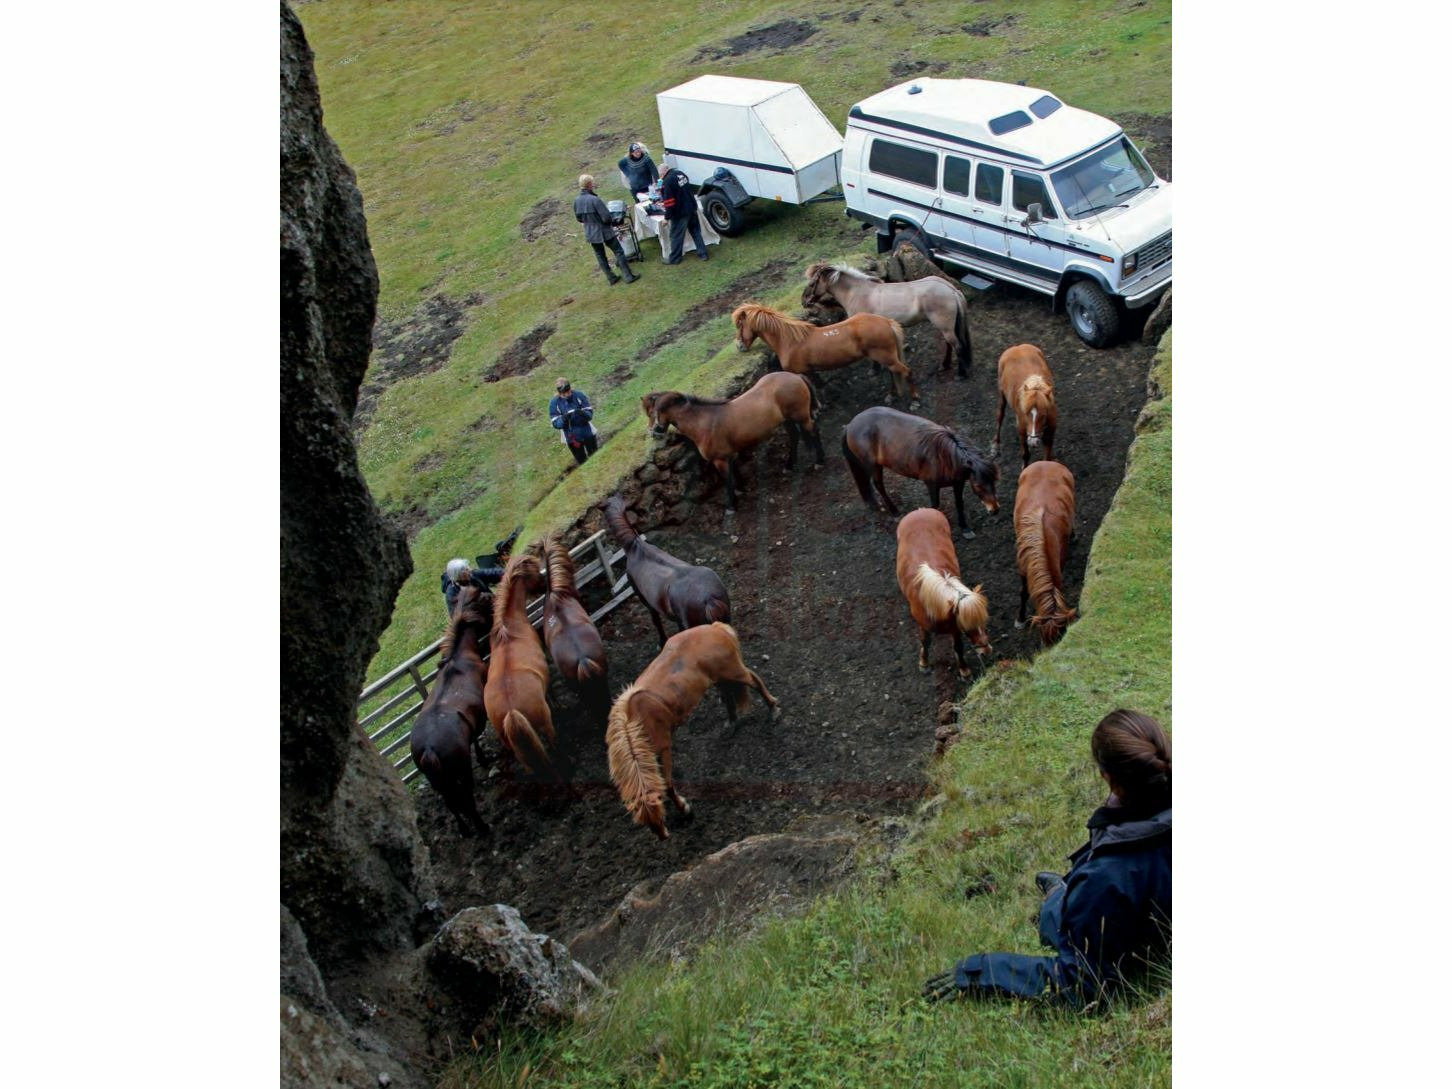 Magische Islandpferde - Eine Liebeserklärung an Pferde, Land und Leute